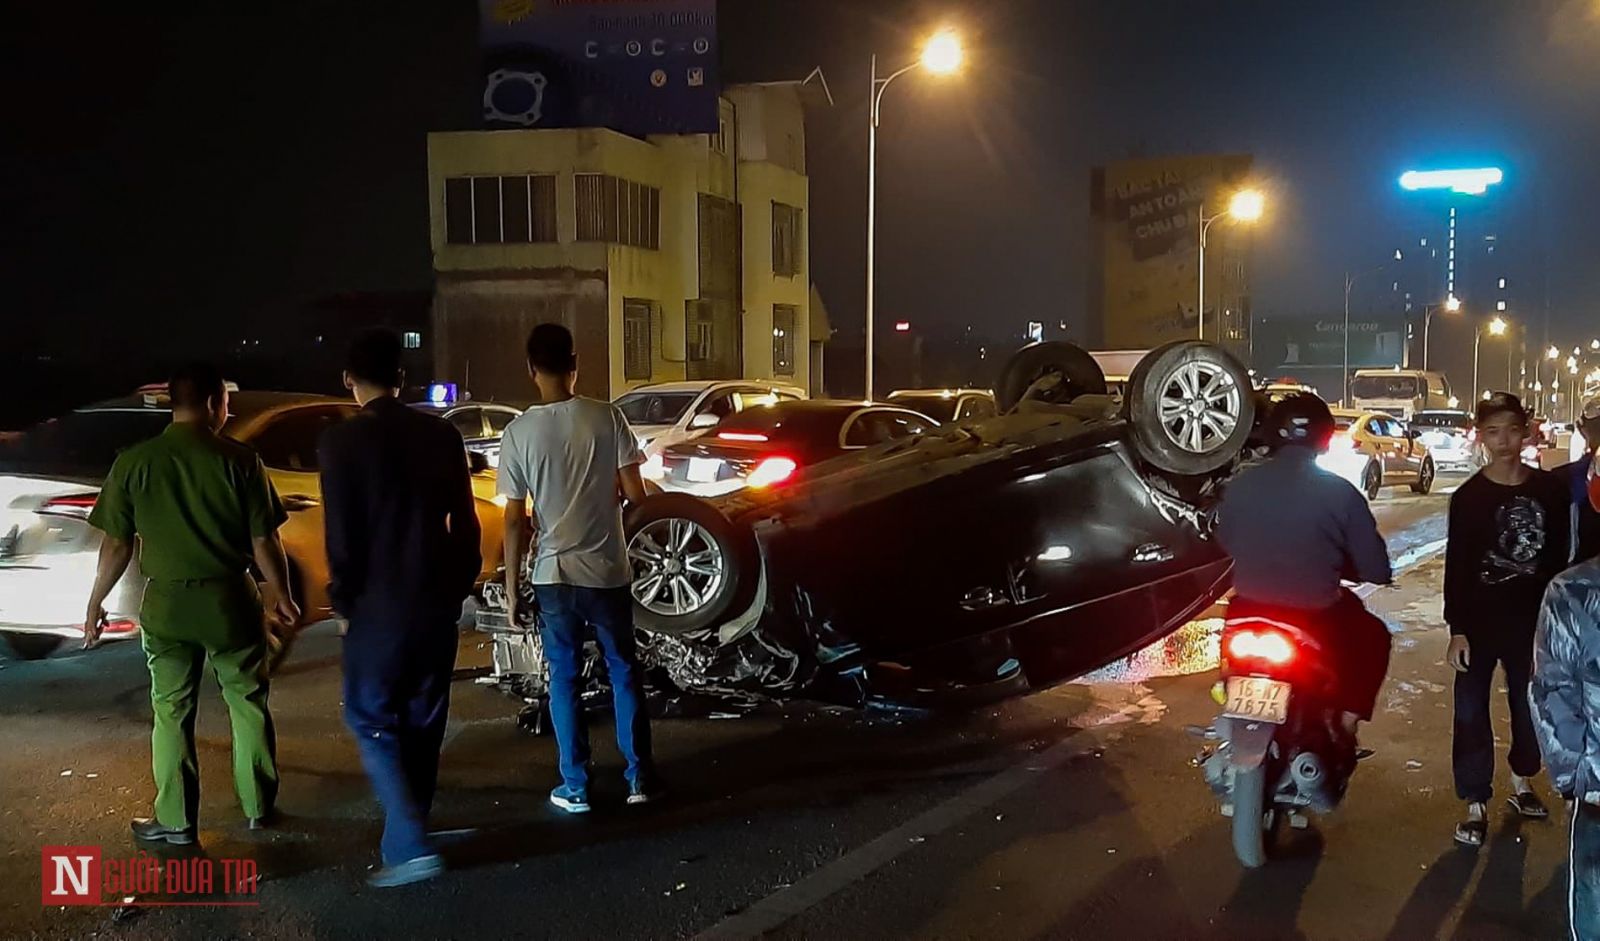 Hà Nội: Tai nạn liên hoàn giữa 3 xe ô tô trên cầu Vĩnh Tuy